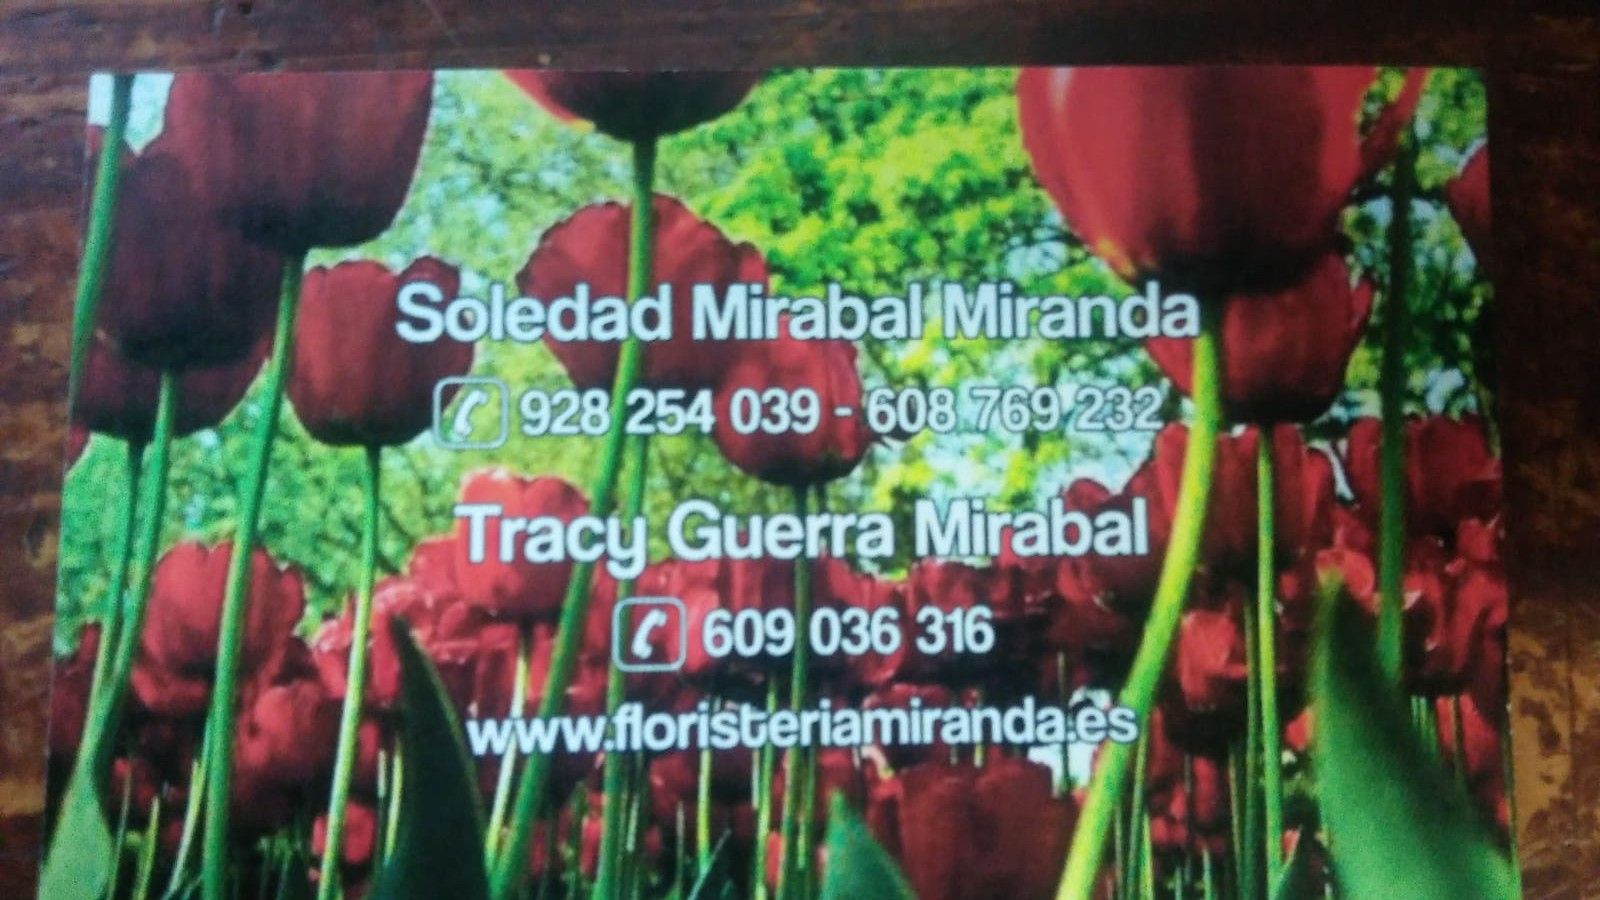 Nuestros servicios: Productos y servicios de Floristería Miranda